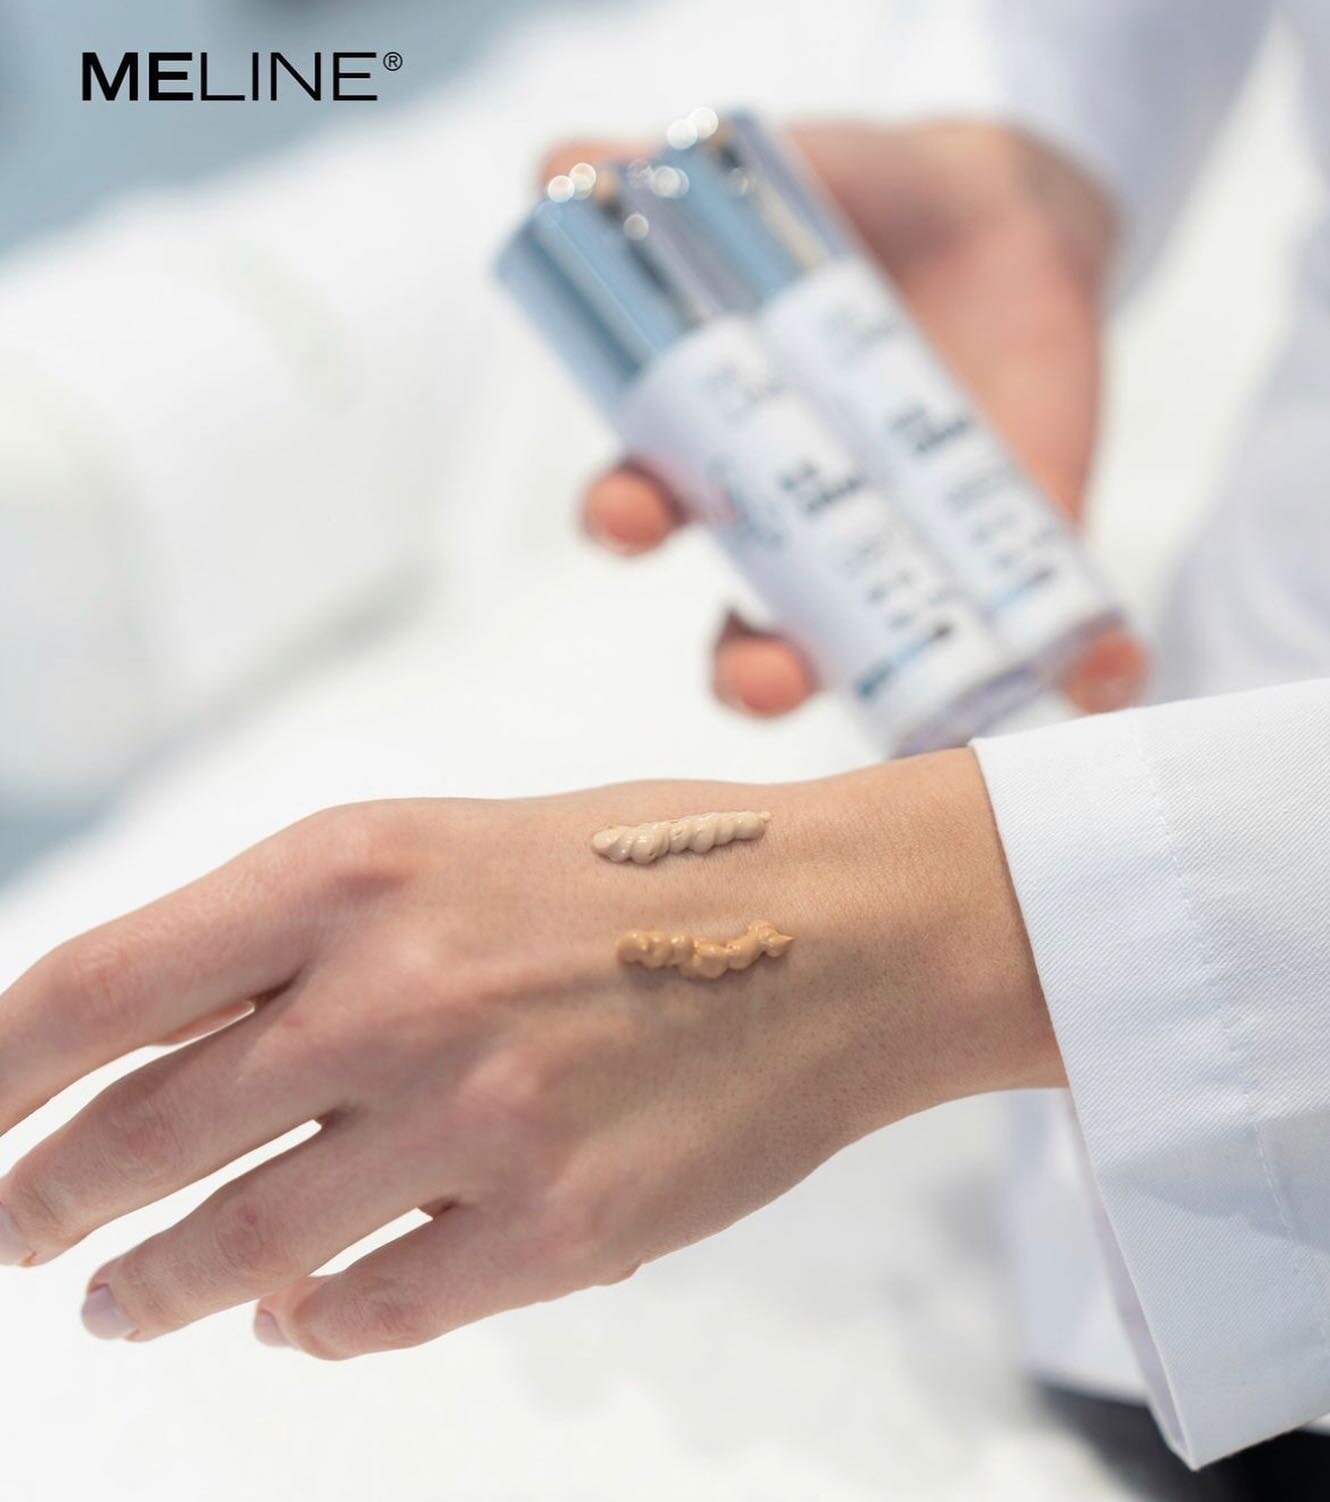 Meline B.B Cream🤍🤍
Gir deg en frisk og naturlig hudtone, samtidig som den beskytter mot UV-str&aring;ling med SPF 30☀️❄️

Produktet kommer i to ulike nyanser: Light og Medium.